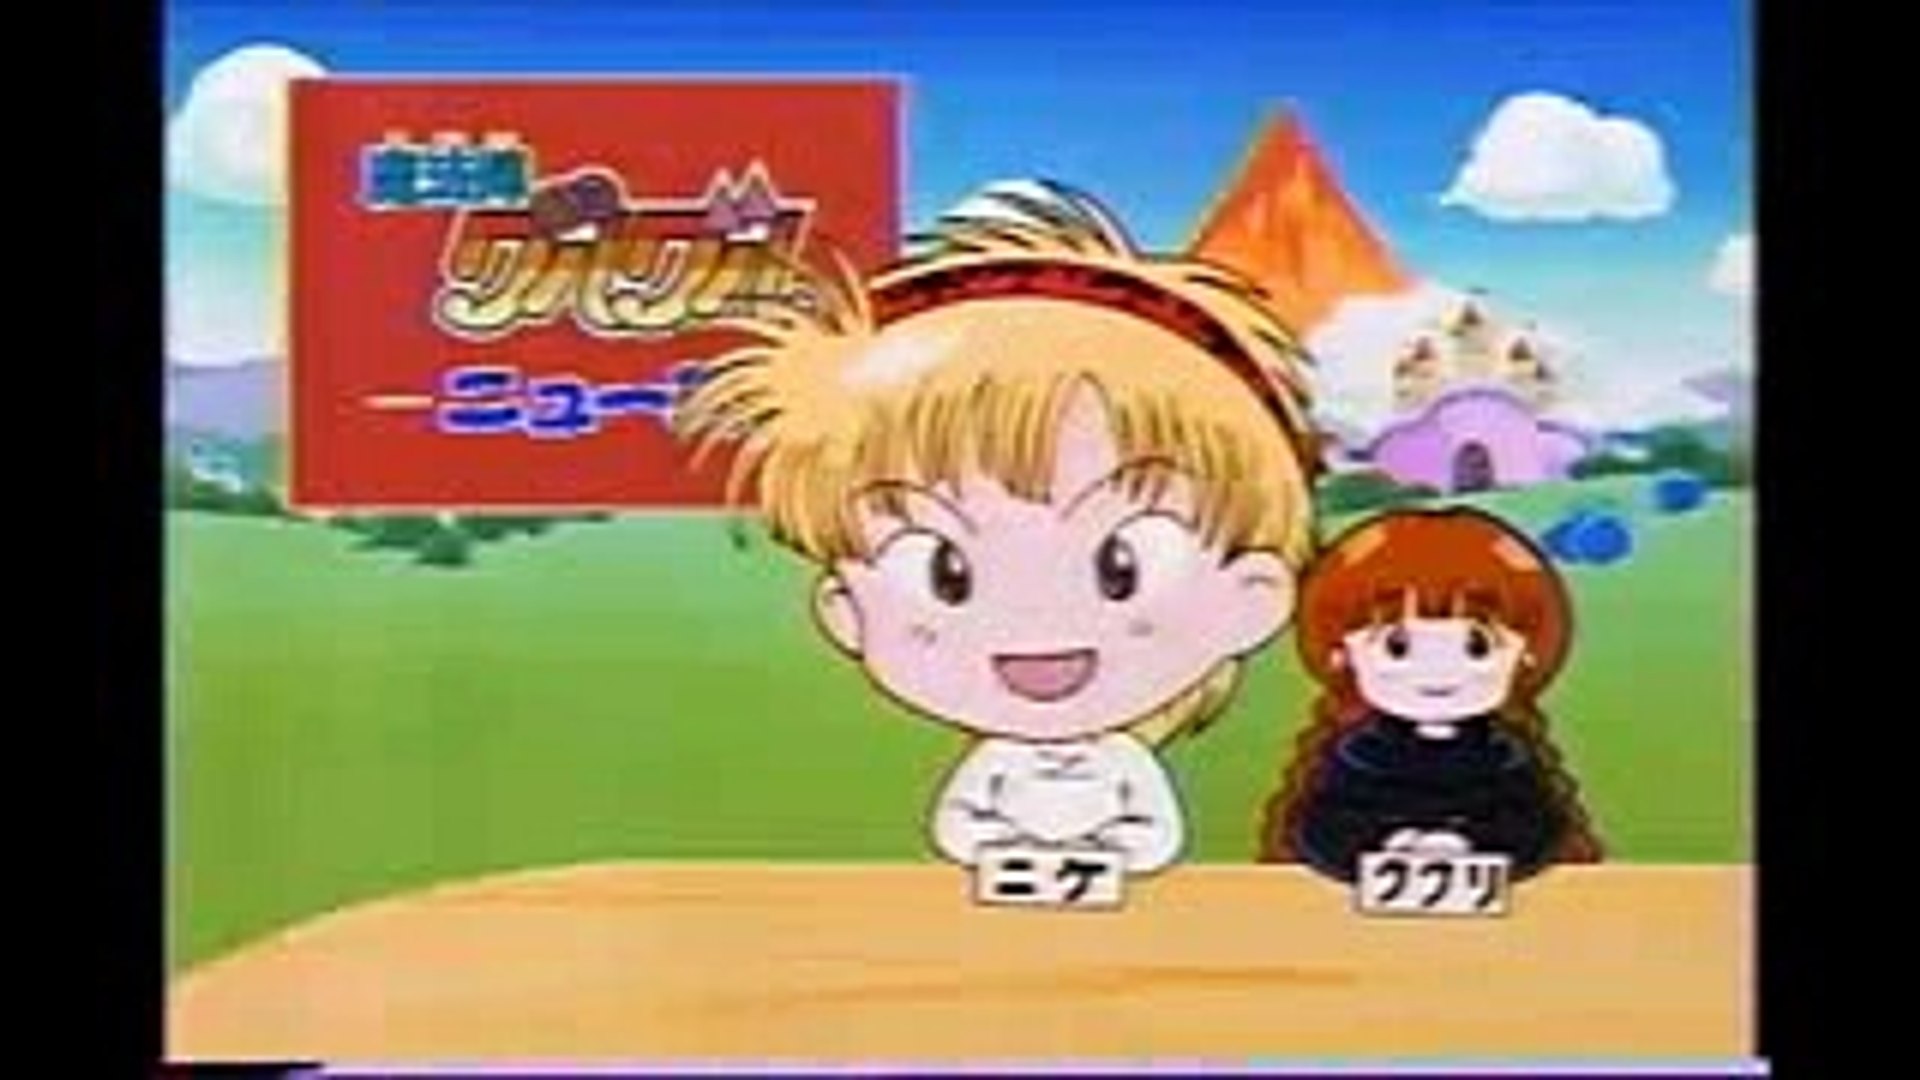 懐かcm 1995年 Enix エニックス スーパーファミコン 魔法陣グルグル Nostalgic Cm Of Japan Video Dailymotion